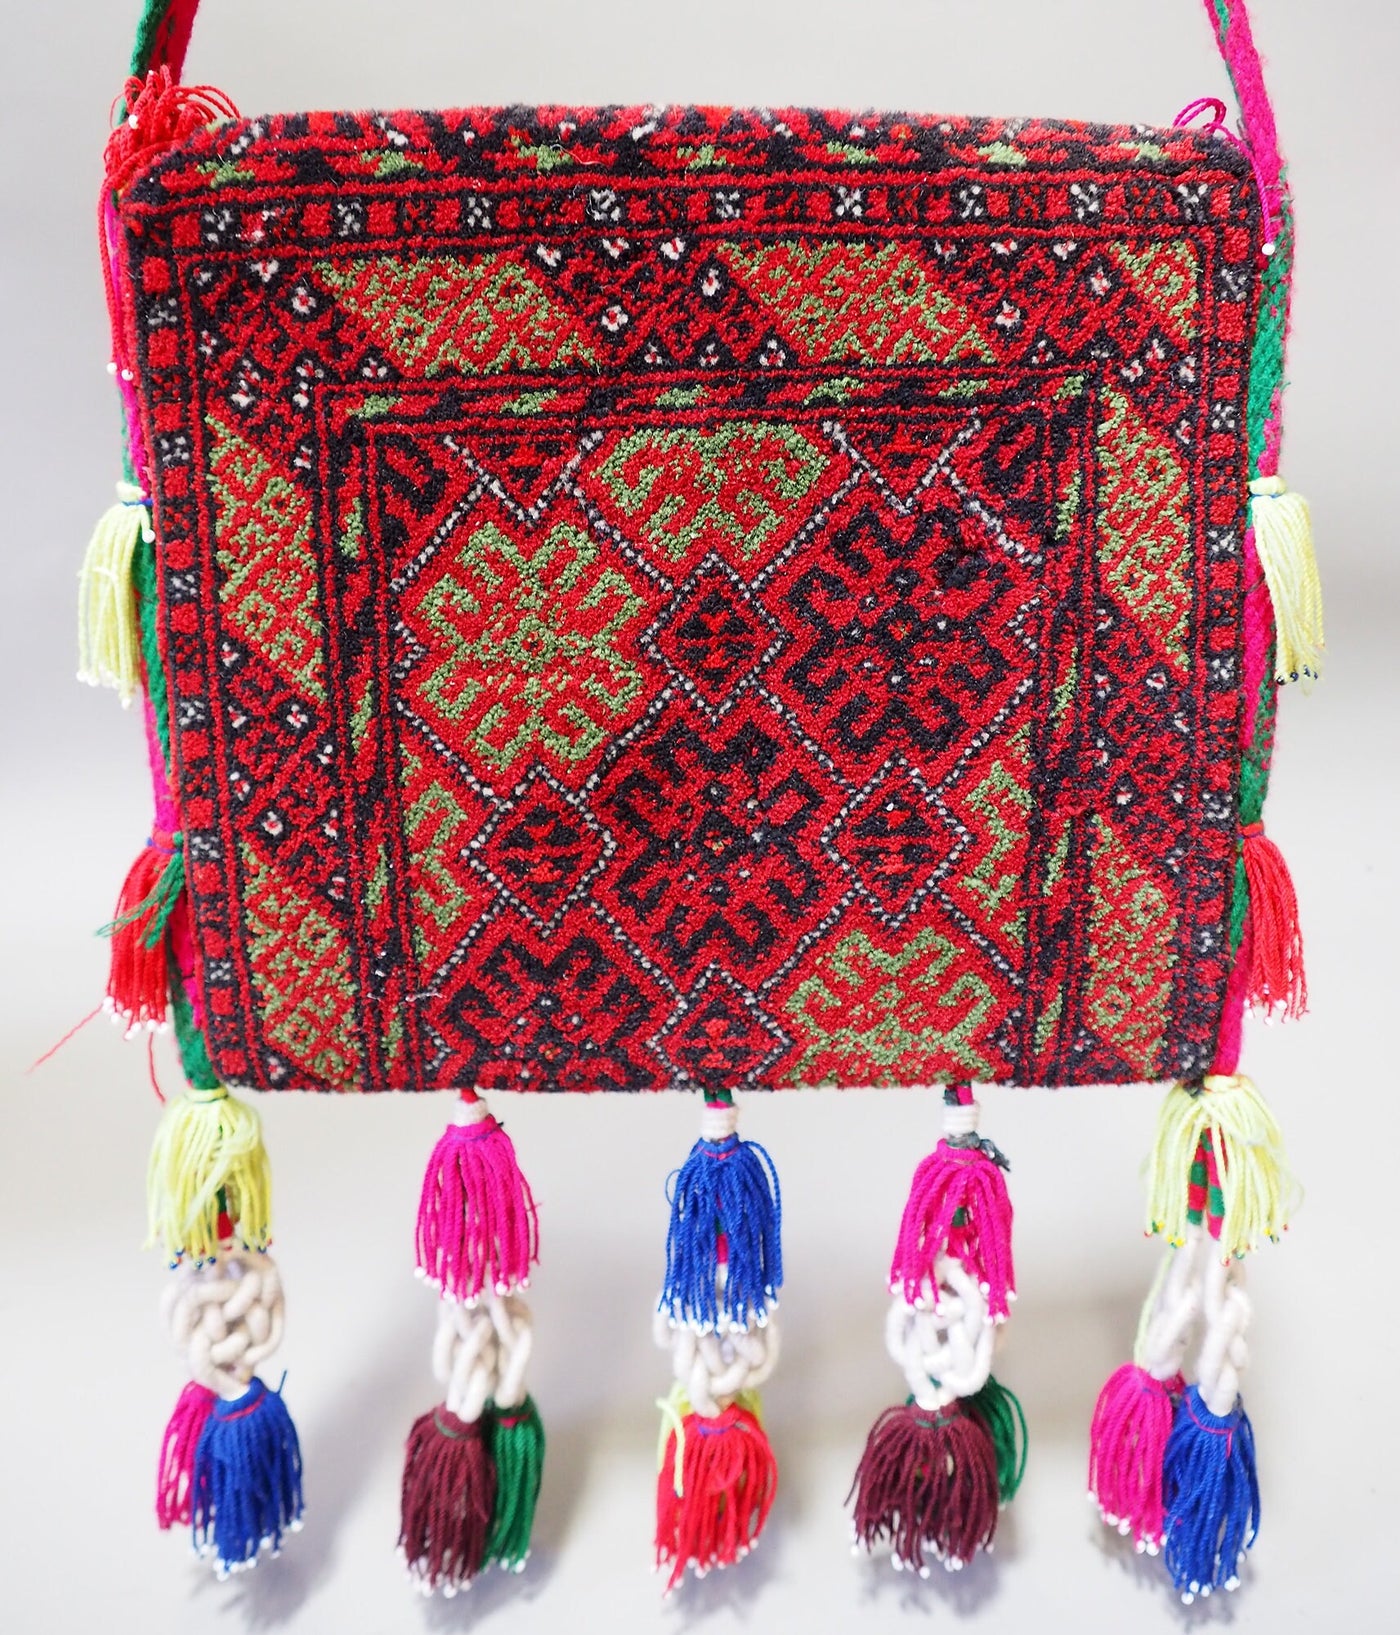 orient Afghan Tukmeische Teppich nomaden Handgeknüpft wollen Hochzeit Tasche handtasche Schultertasche tragetasche 1001-nacht Afghanistan  Orientsbazar   